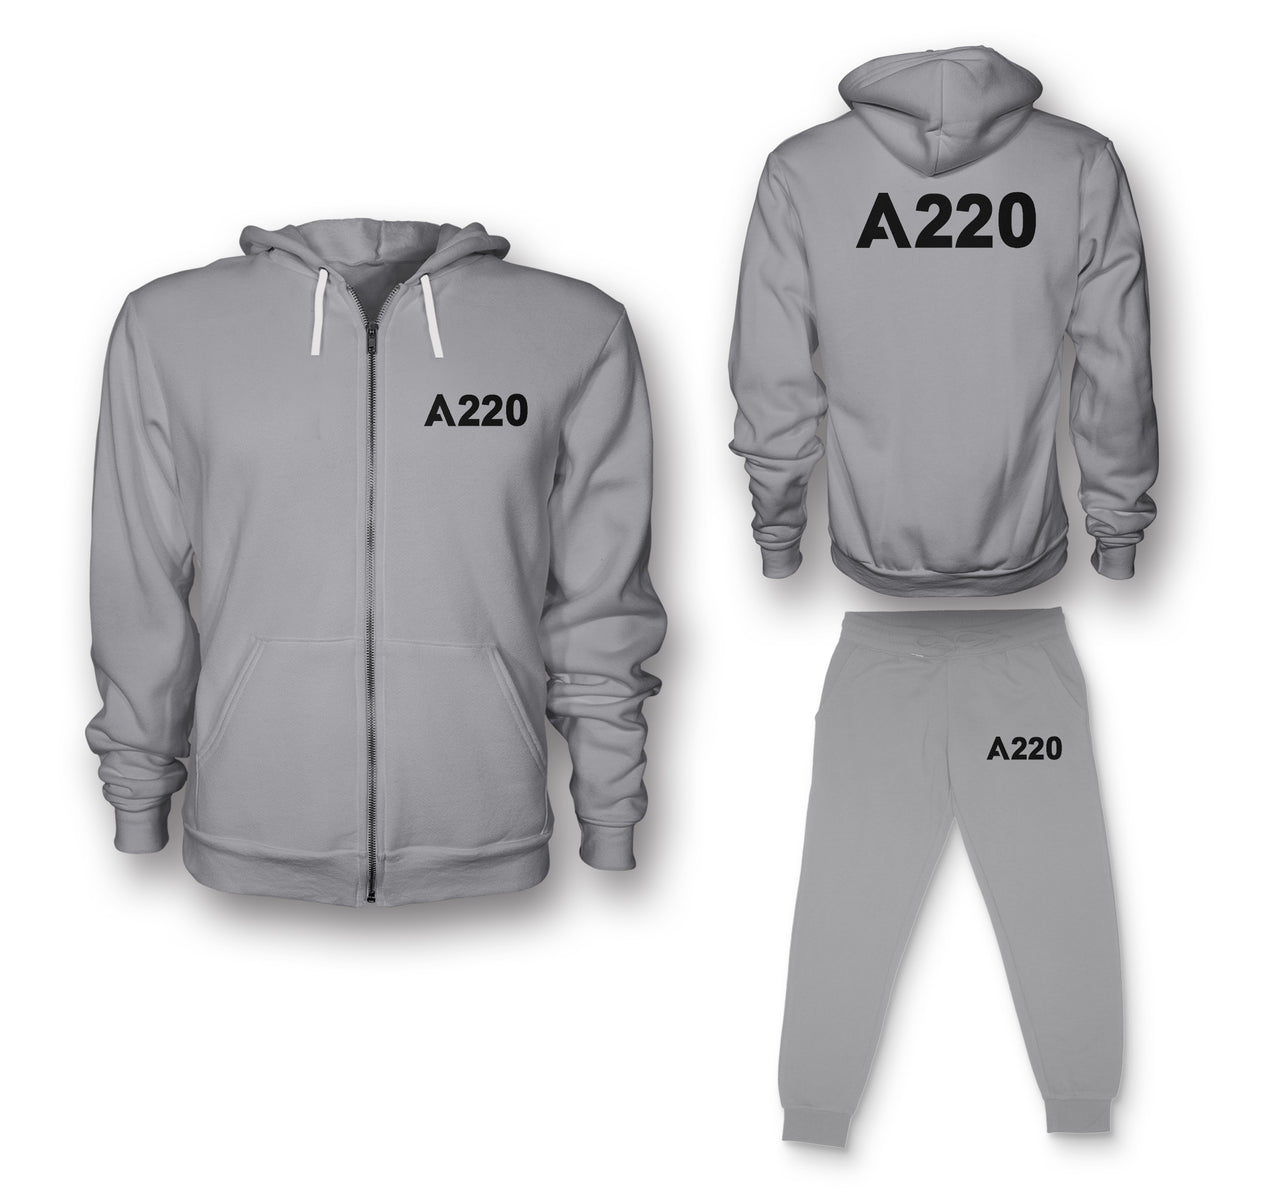 A220 Flat Text Designed Zipped Hoodies & Sweatpants Set